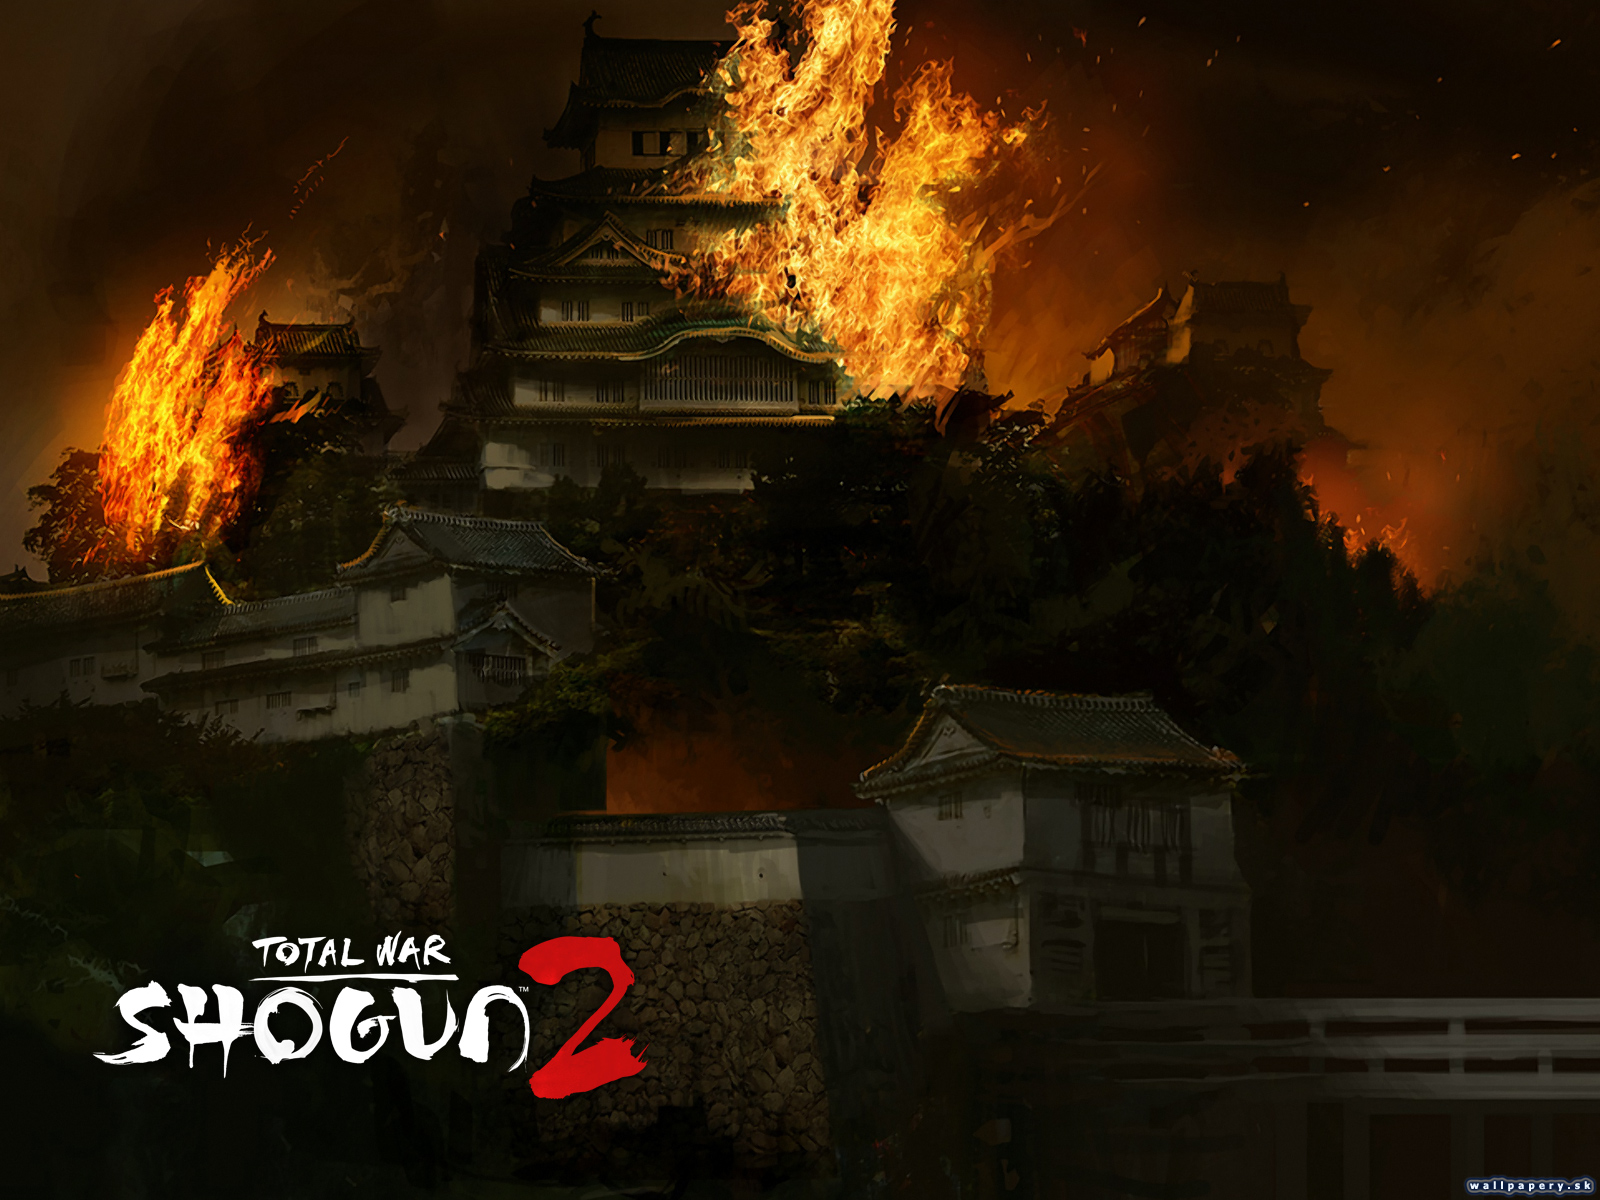 Shogun 2: Total War - wallpaper 3